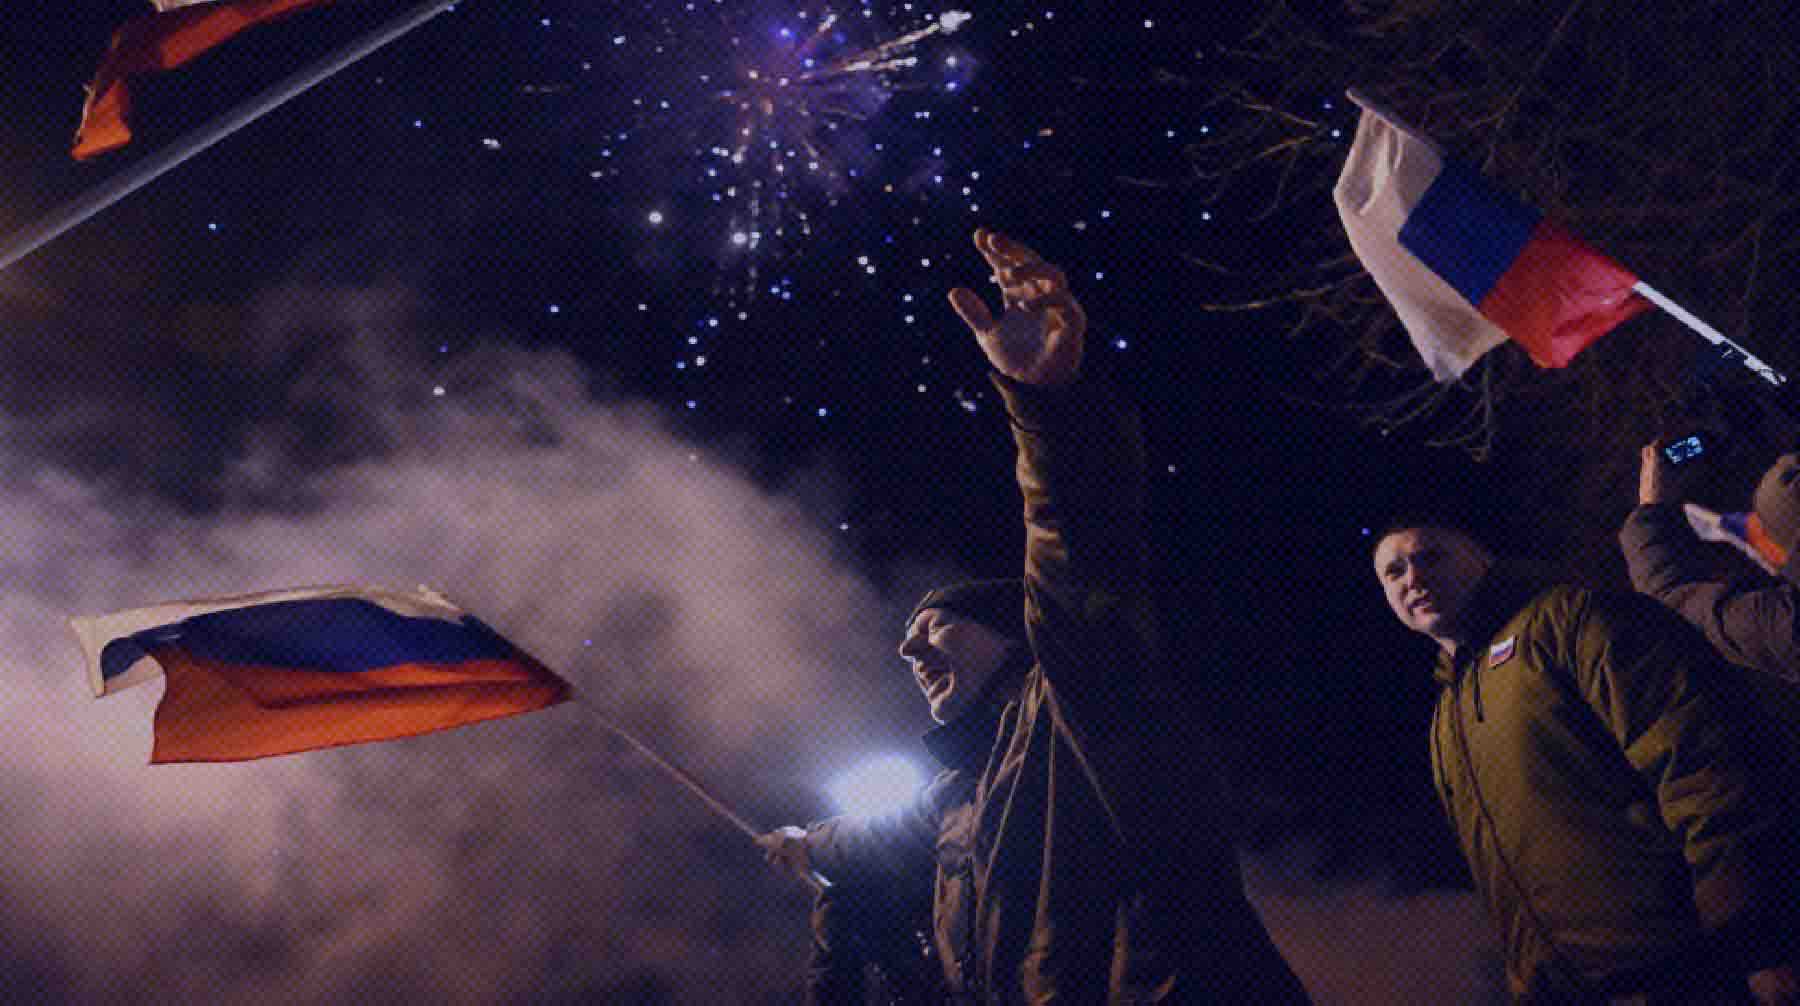 Dailystorm - Ликование Донецка. Как жители ДНР отметили признание республики — фотографии